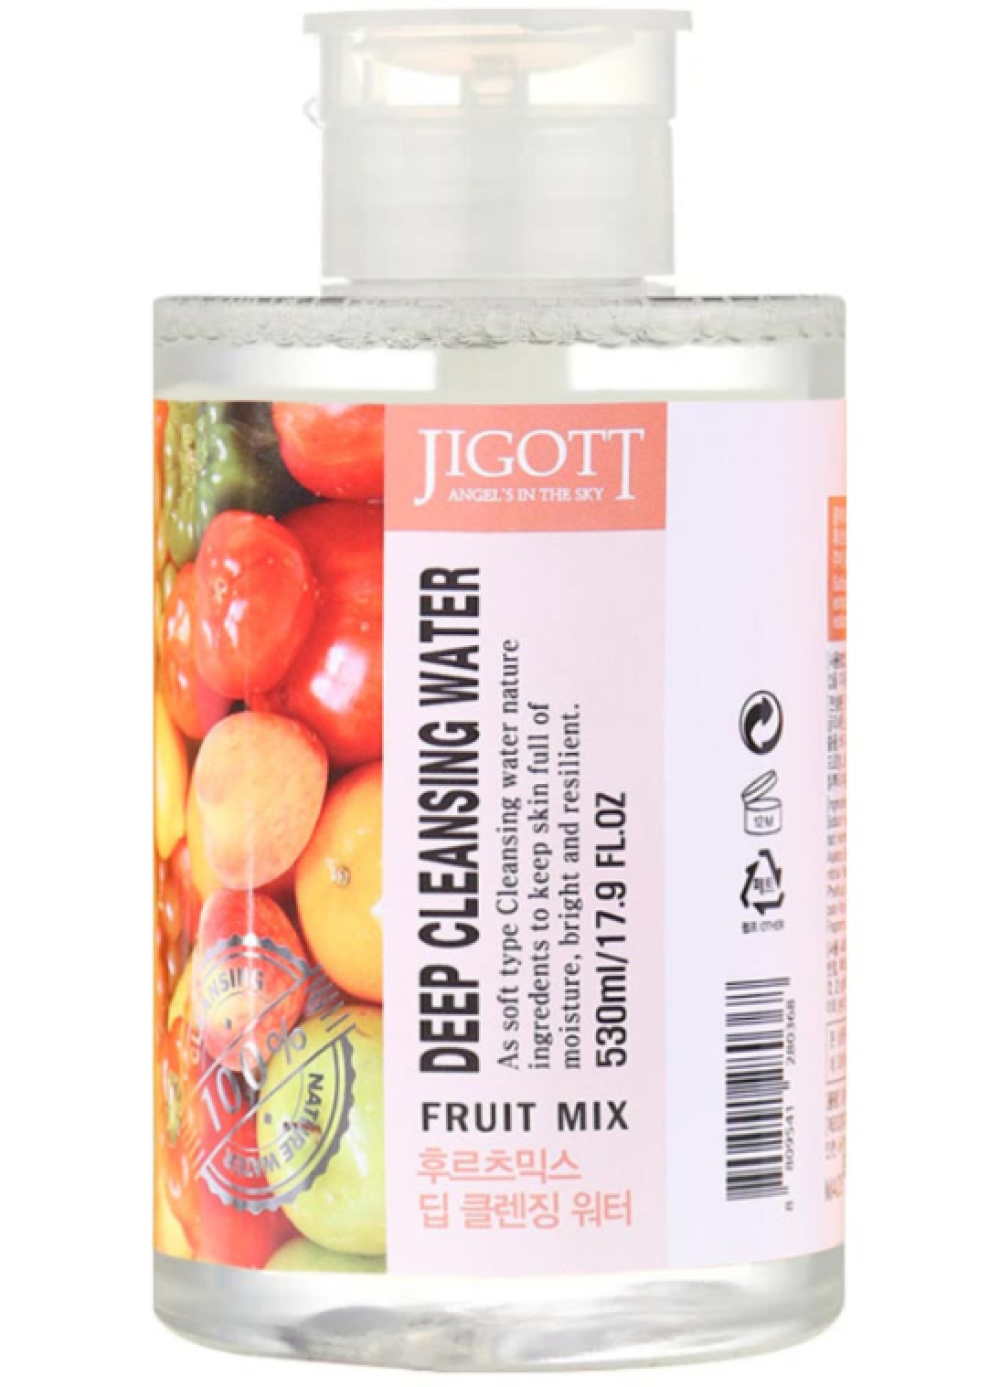  Жидкость для снятия макияжа фруктовый микс Jigott Fruit Mix Deep Cleansing Water, 530 мл